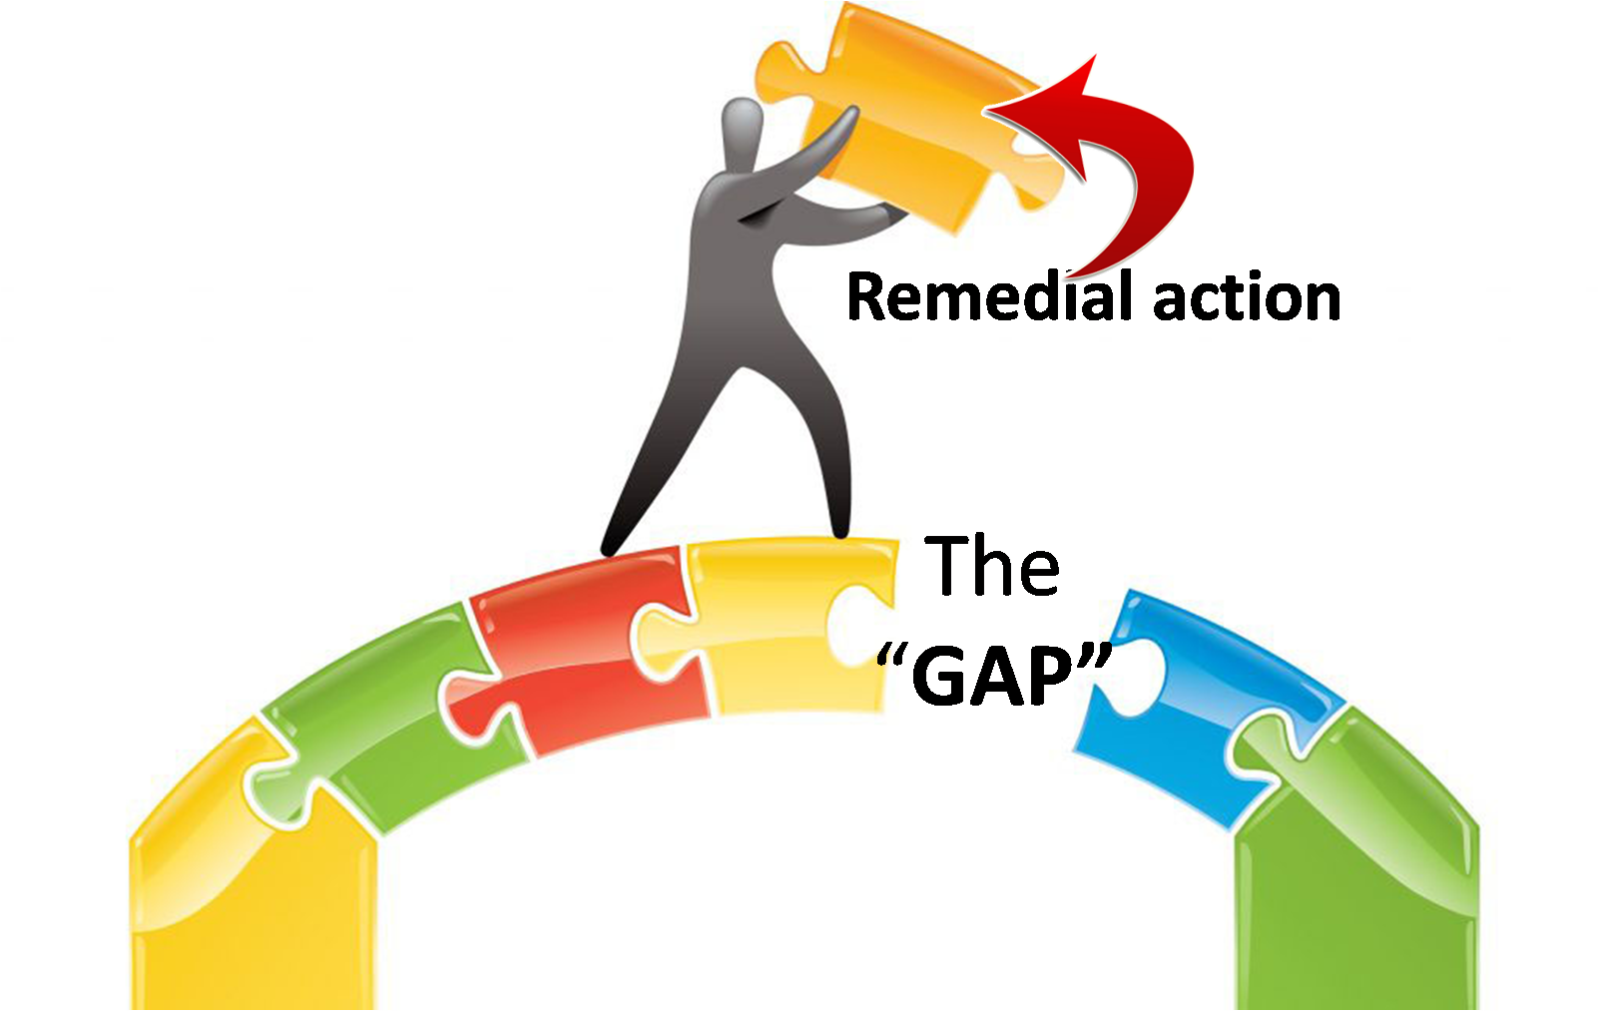 Gap Assessment  Gap Assessment   Core Compliance